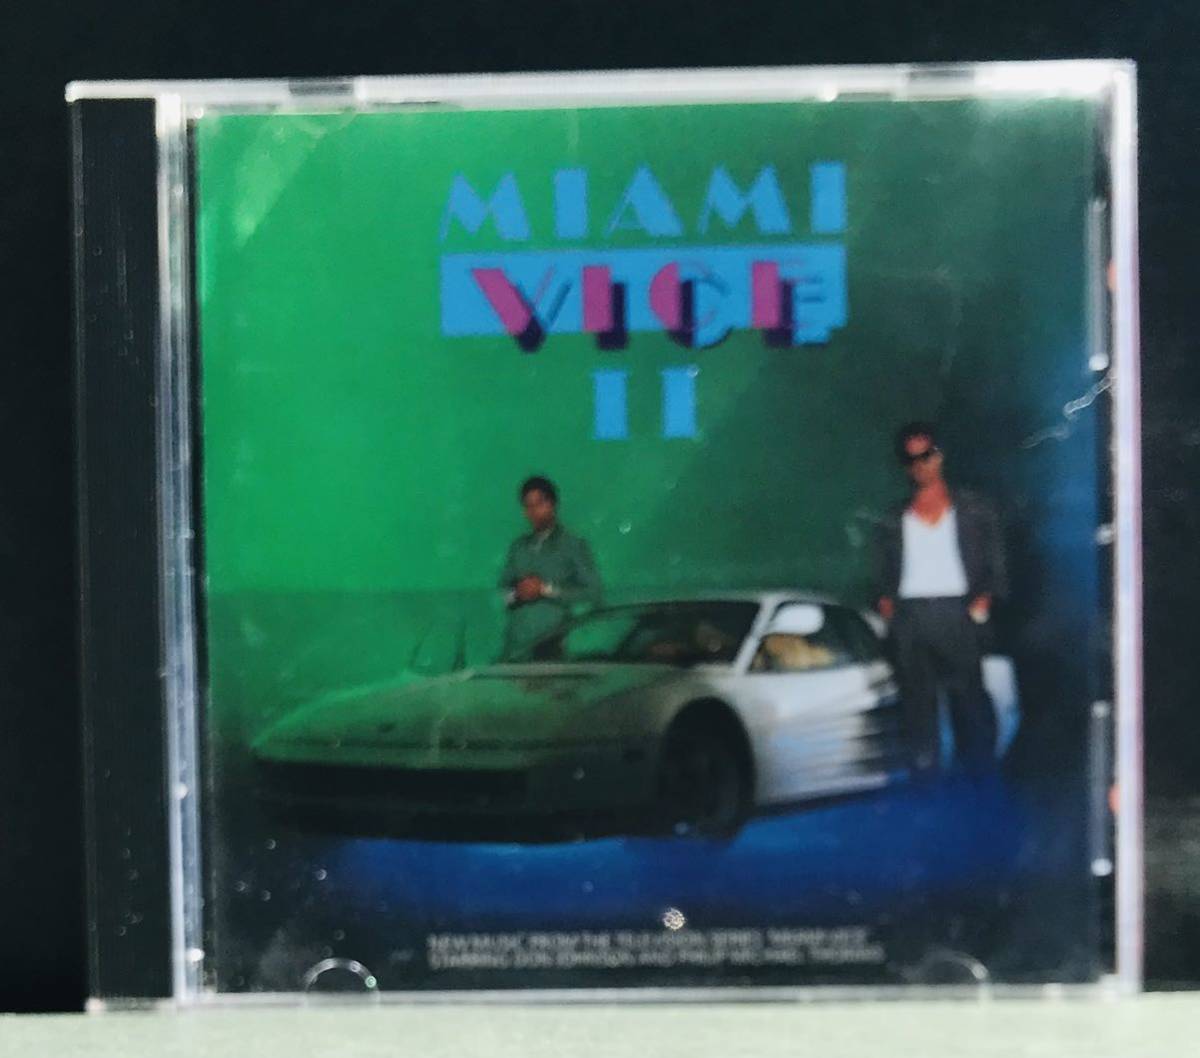  soundtrack CD*[ Miami vise 2]* soundtrack Don * Johnson 